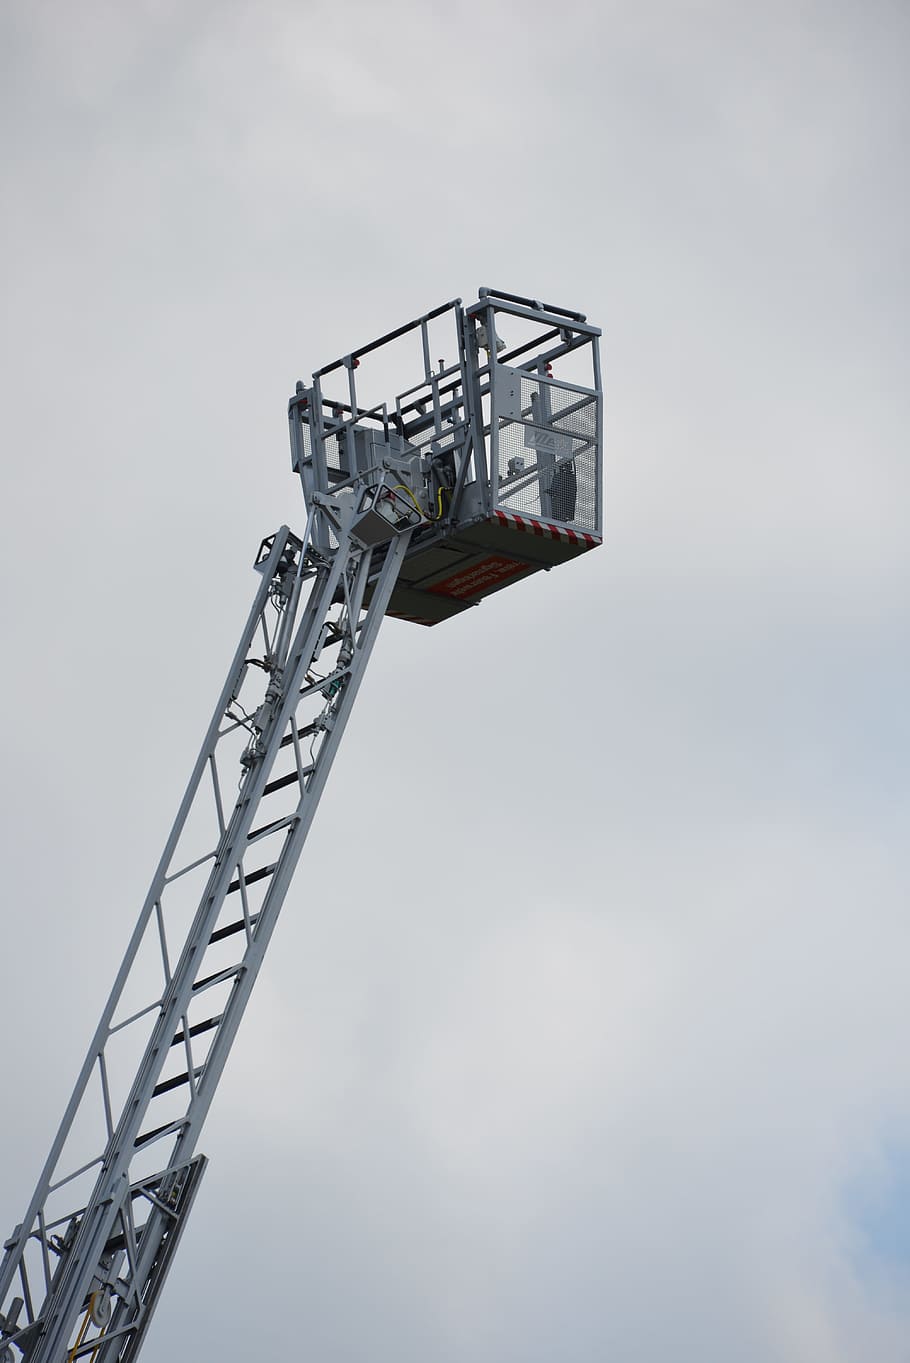 Ladder, Fire, Rescue, Fire Escape, fire, rescue, head of rescue, cart, sky, clouds, fire truck